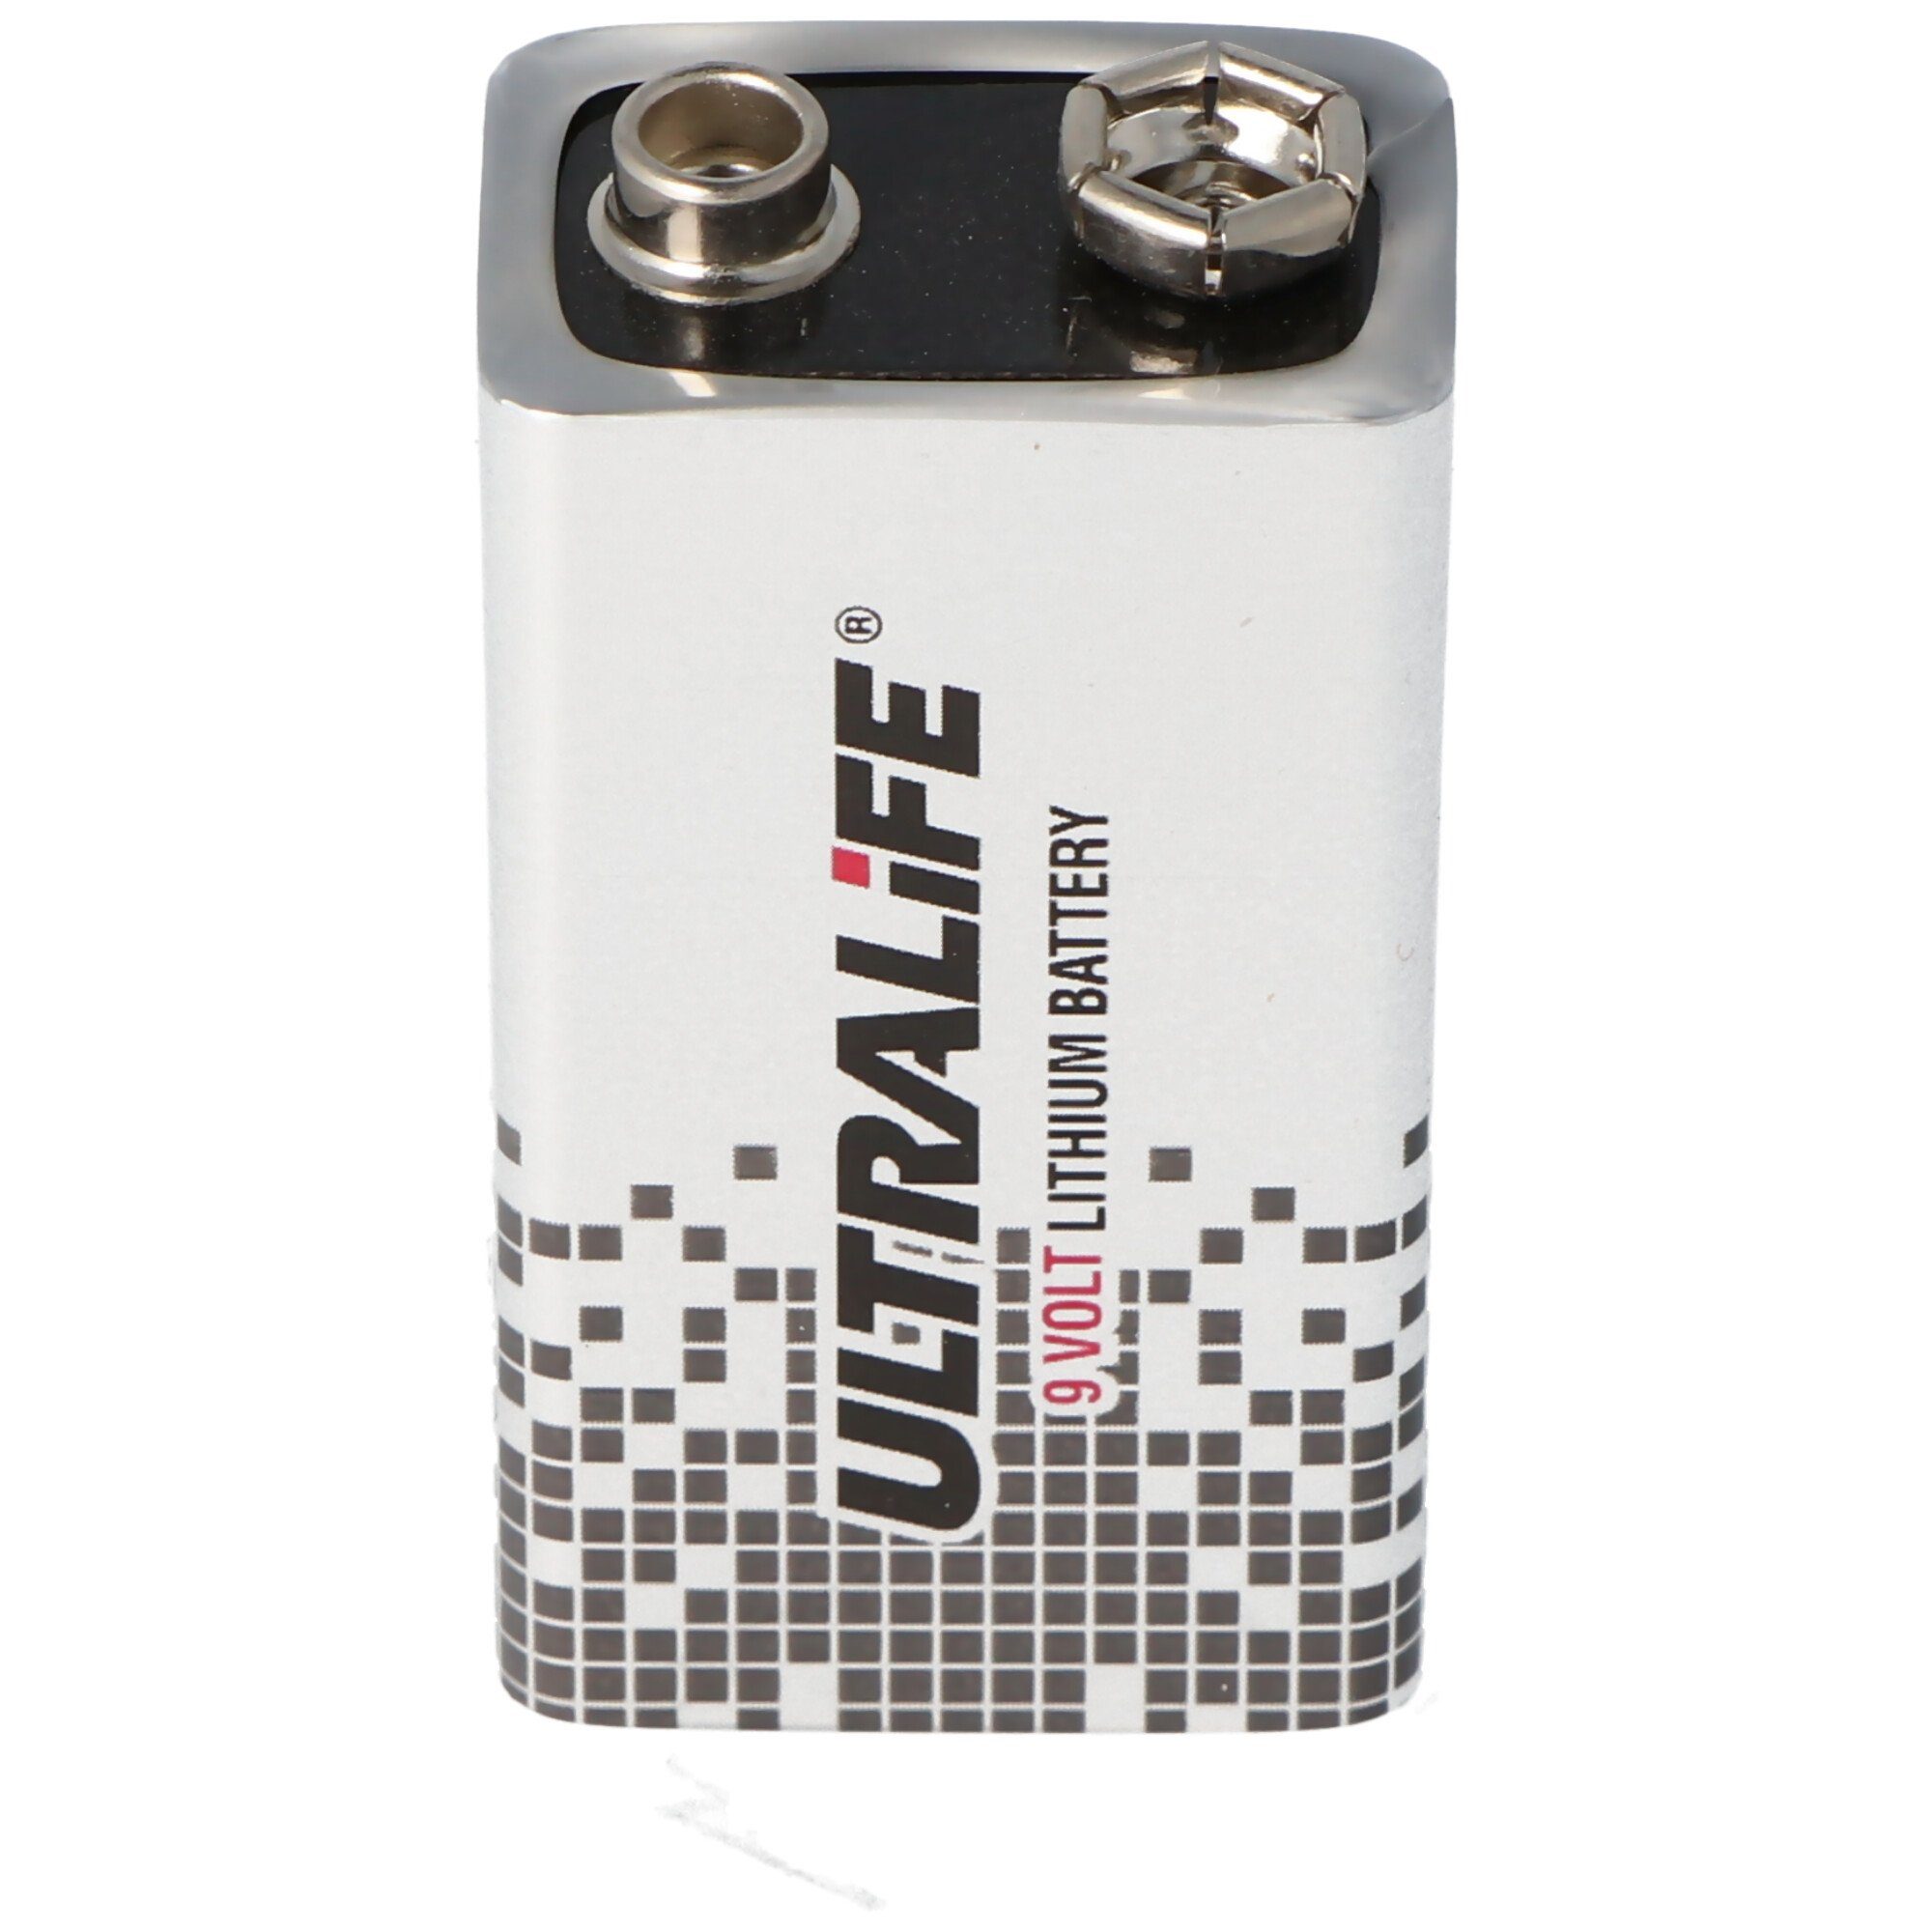 Batterie und Ersatzbatterie H für Secvest UltraLife passend FU2993 Funk-Rauchmelder ABUS